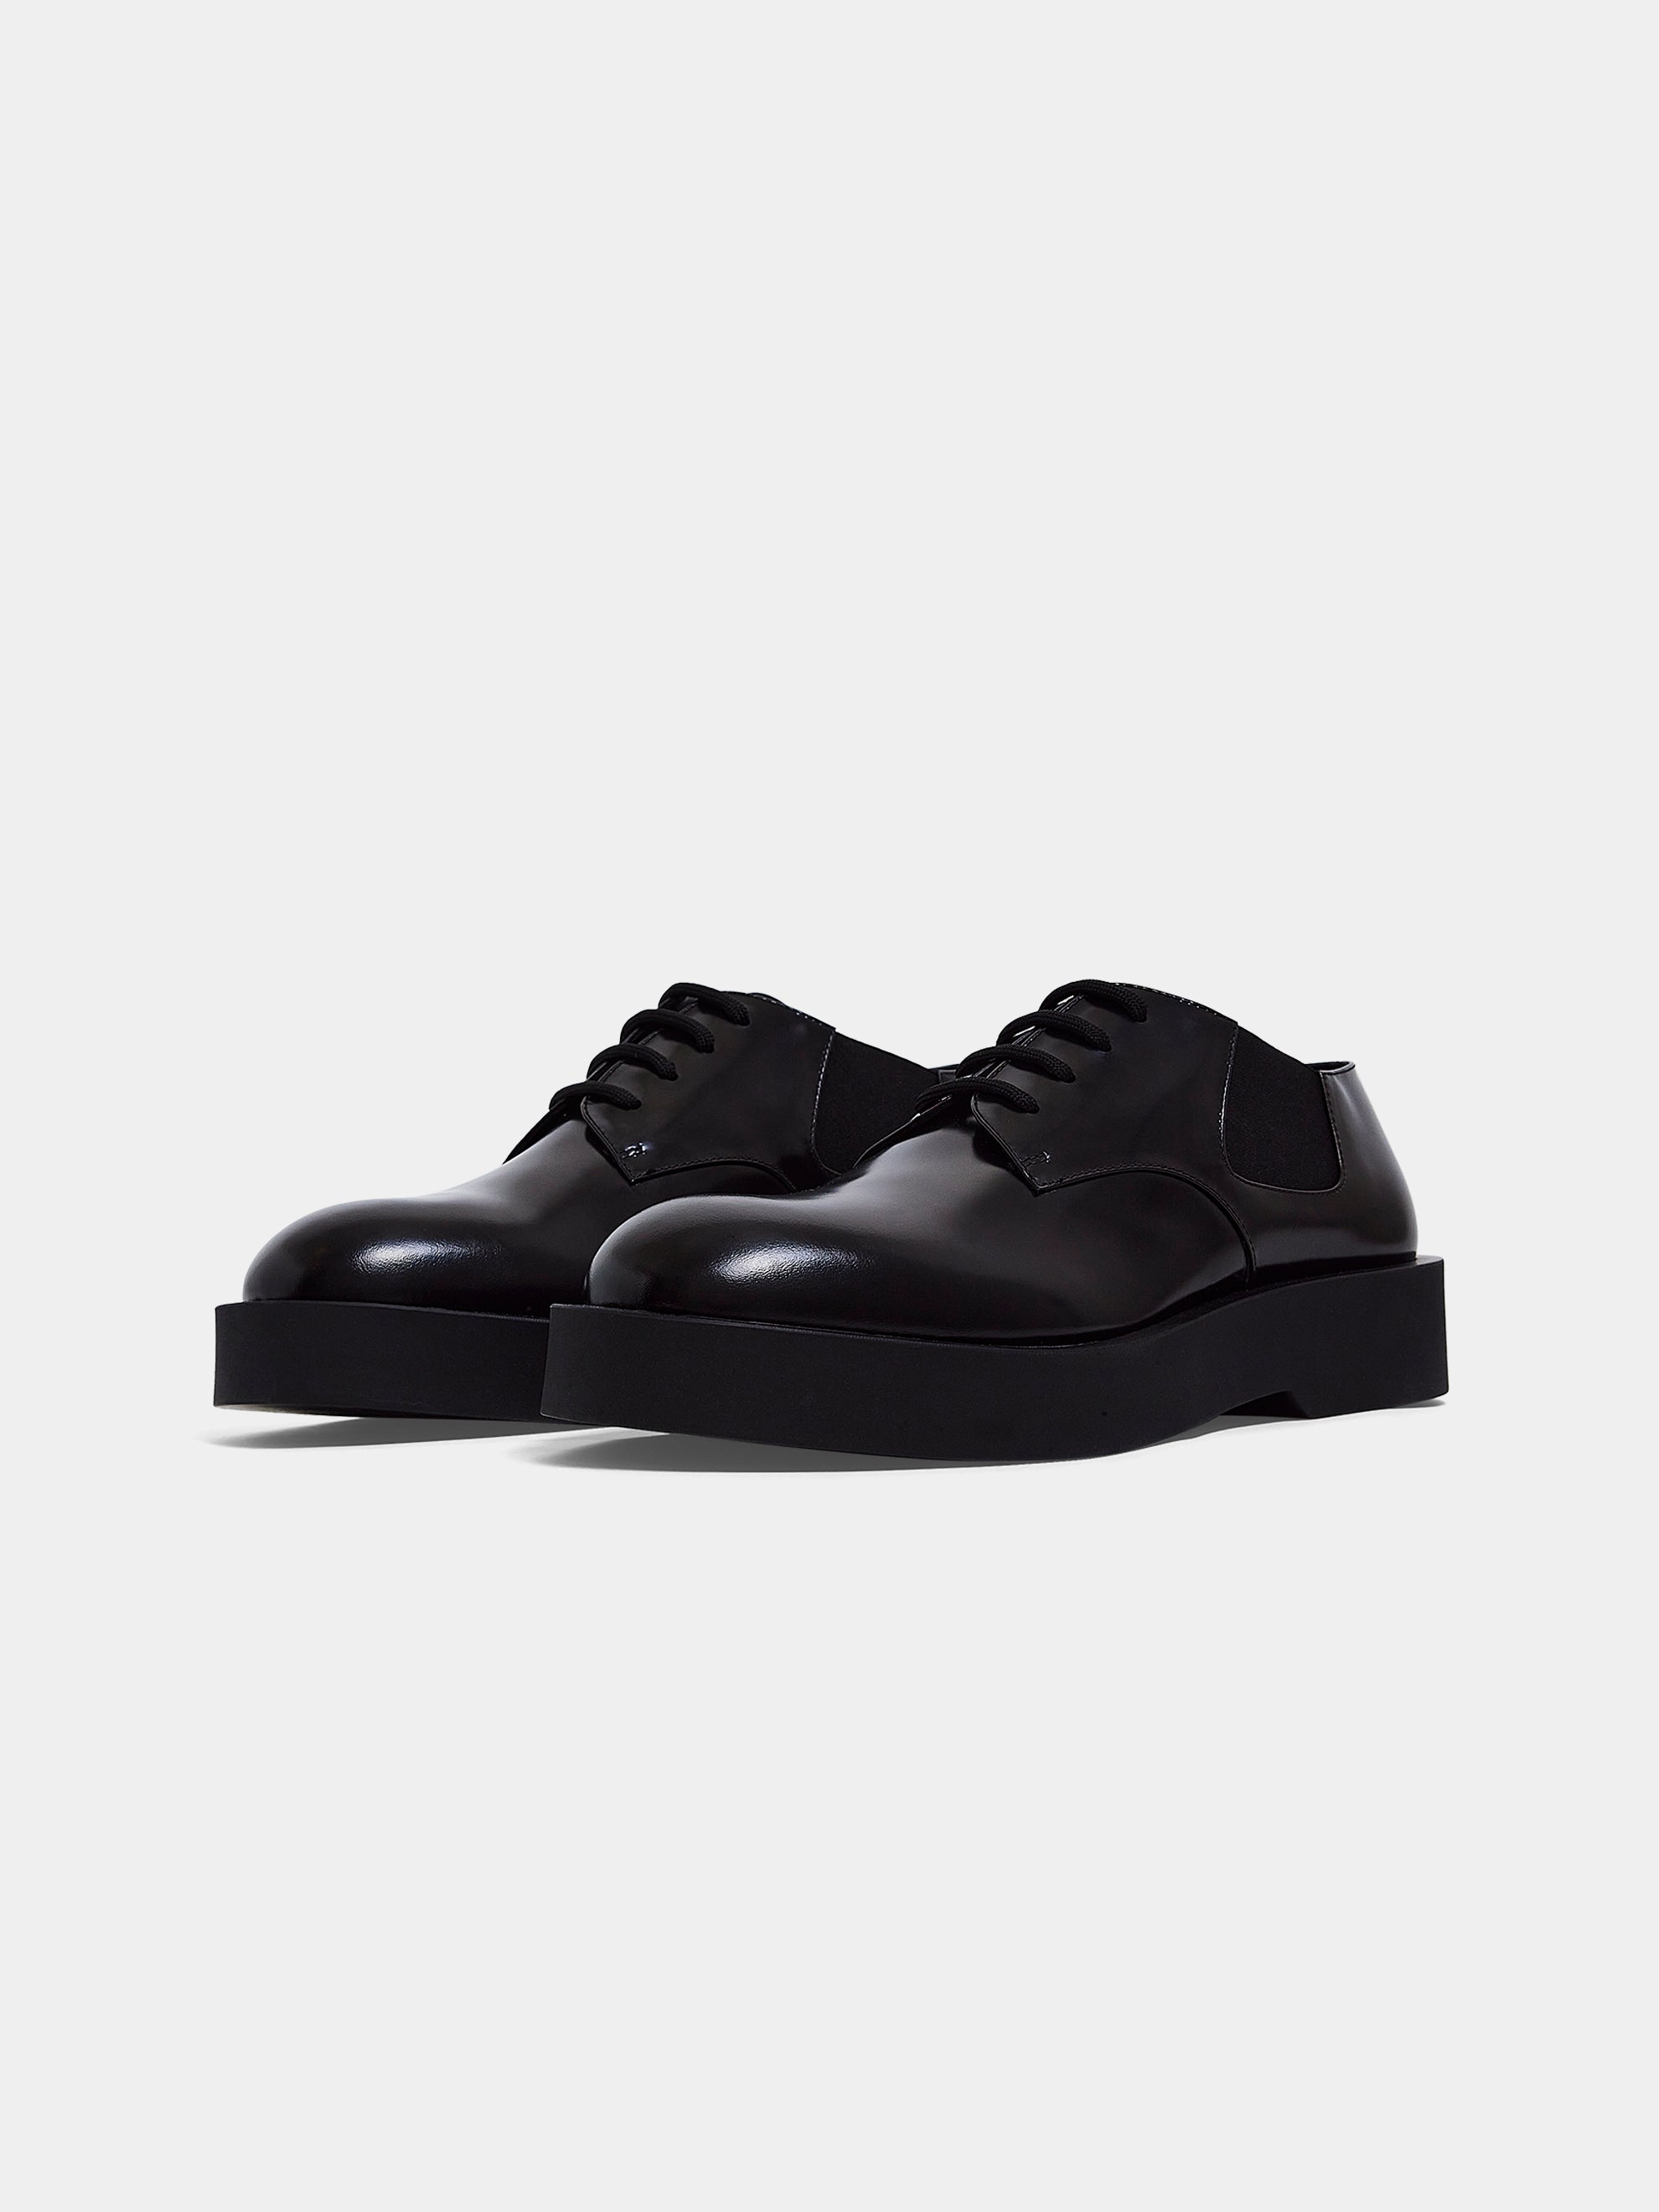 Lace-Up Rubber Sole Shoes (Black)